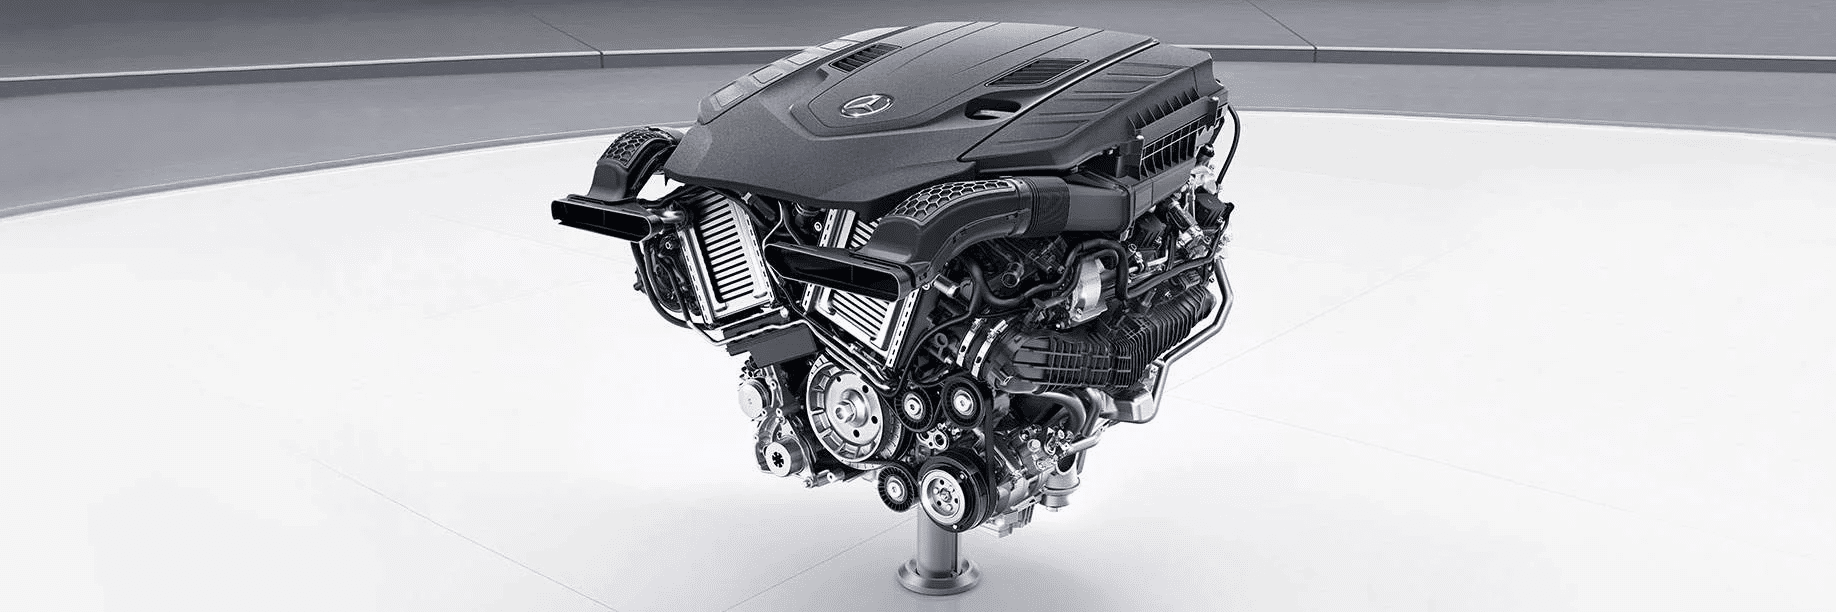 Технічні характеристики Mercedes Maybach S-class Седан Порівняння двигунів